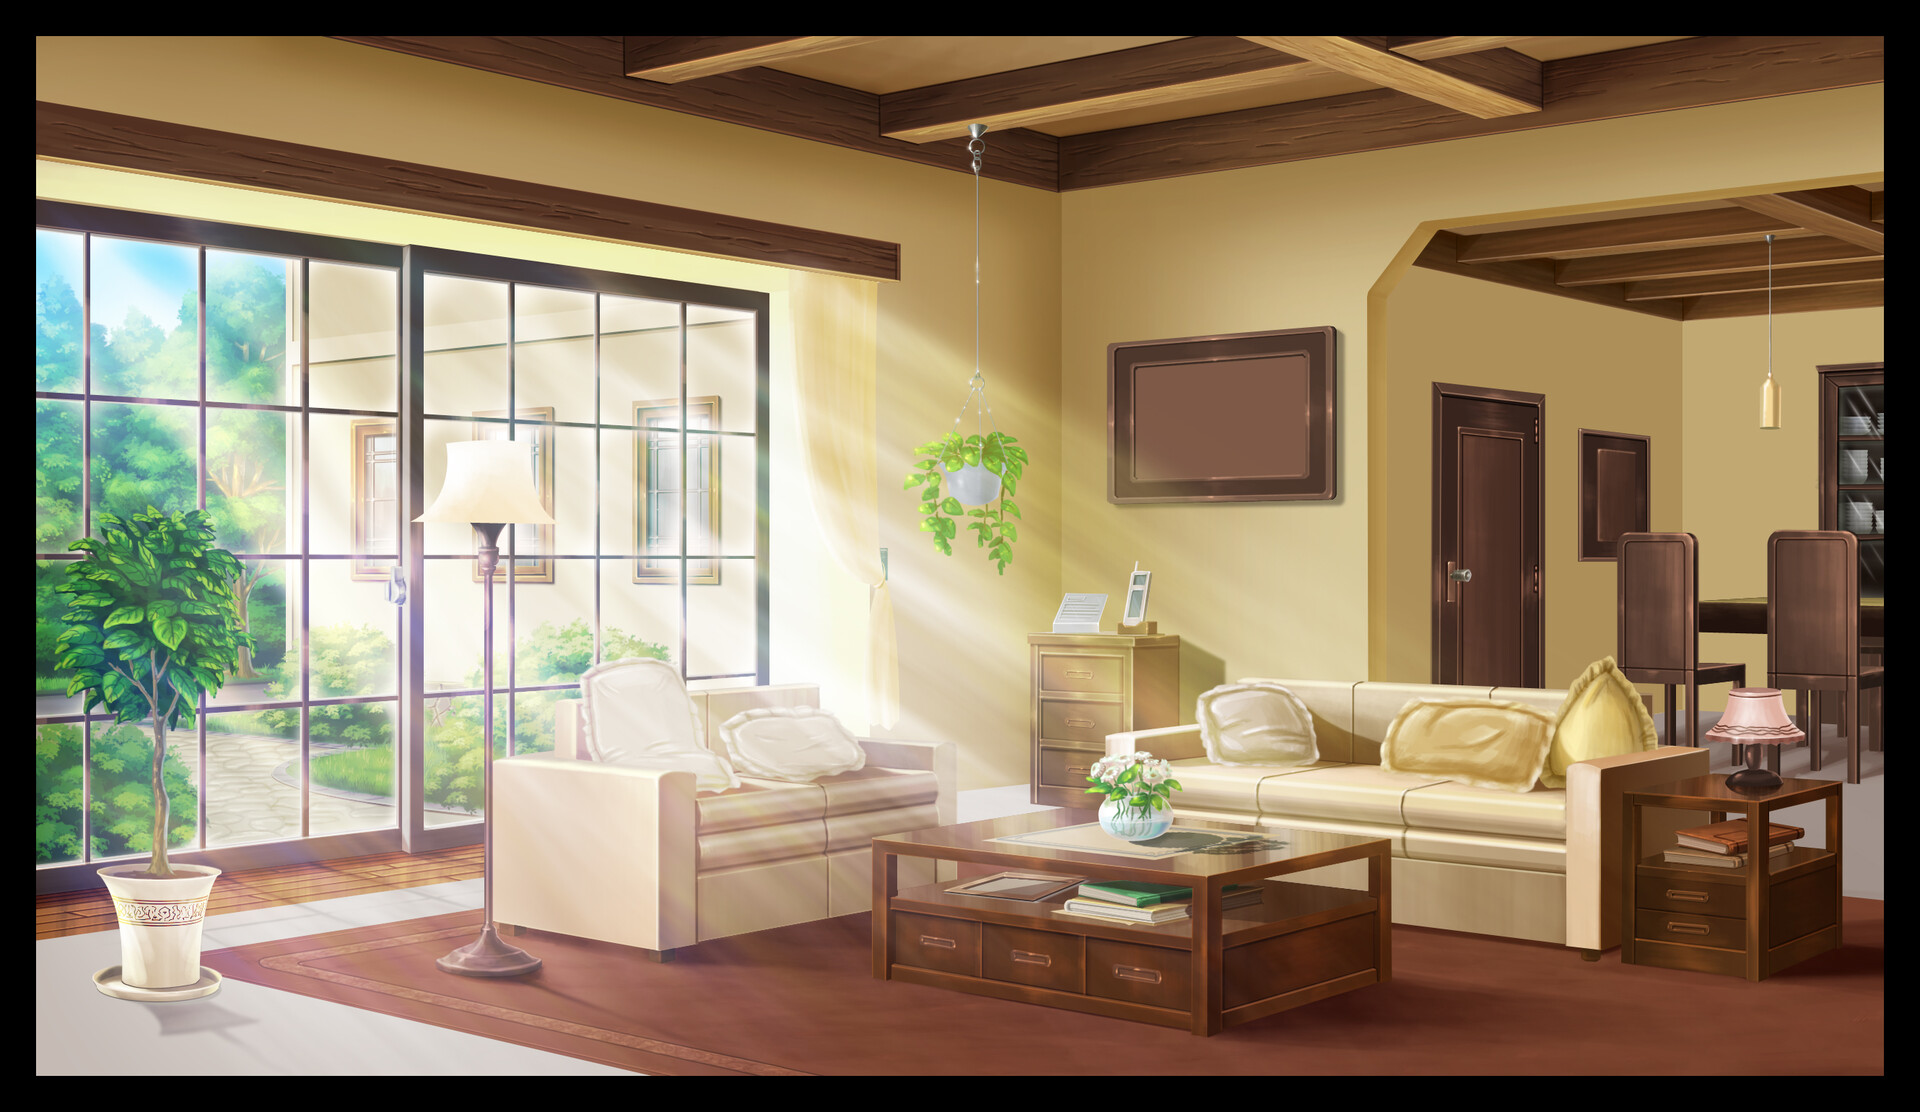 Hình nền anime phòng trống: Biến không gian nhà bạn trở nên độc đáo và ấn tượng với hình nền anime phòng trống tinh tế và đẹp mắt. Với màu sắc tươi sáng, hình tượng dễ thương, bạn sẽ muốn tự tay trang trí phòng trống lại theo phong cách này. Chỉ cần 1 click để sở hữu ngay hình nền anime phòng trống.